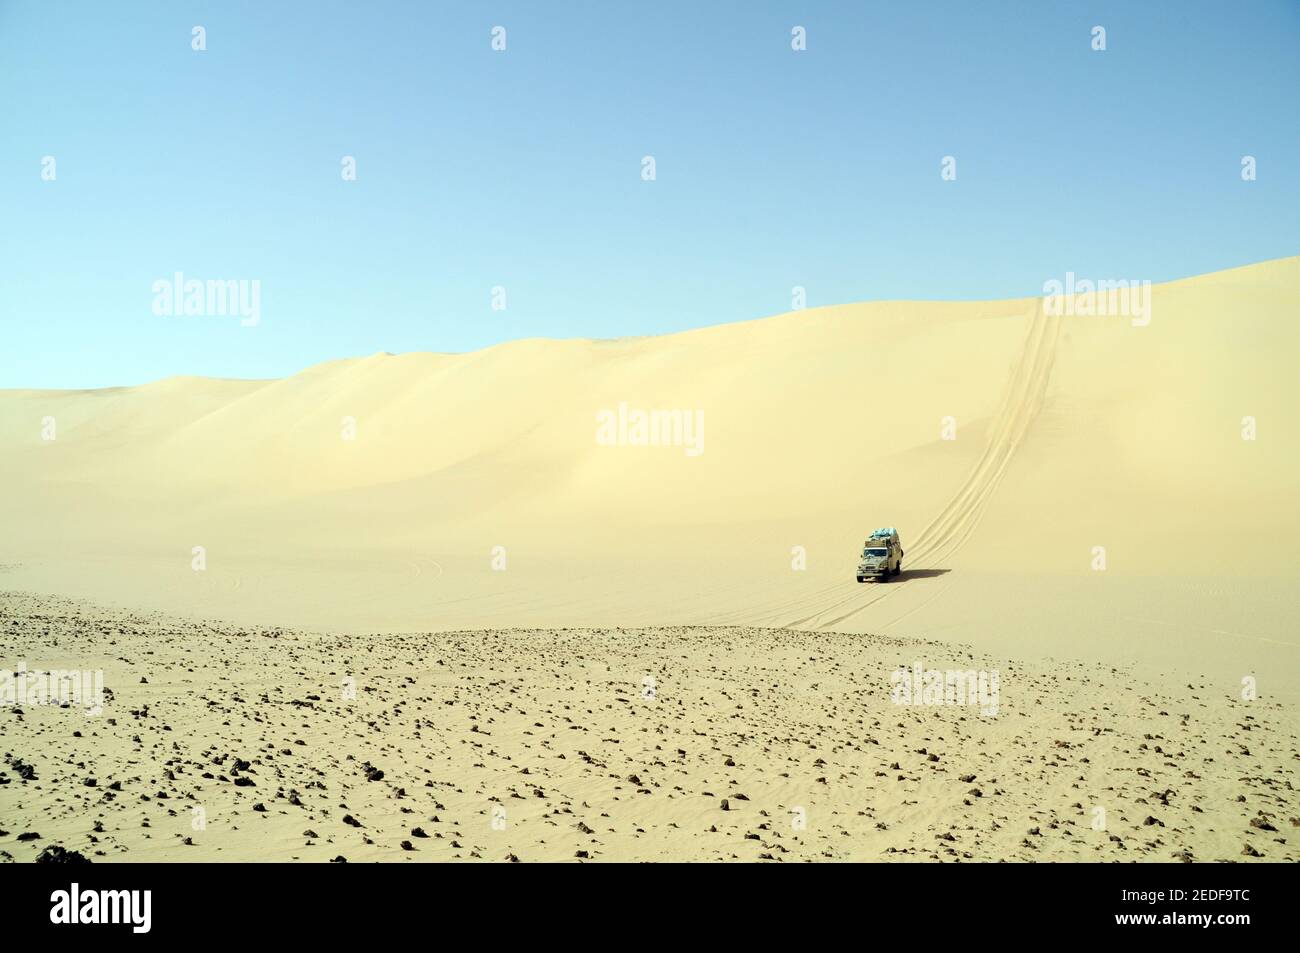 Un désert safari Land cruiser 4x4 Jeep écussons une dune de sable géant dans la grande mer de sable du désert occidental, Sahara Égyptien, l'Egypte. Banque D'Images